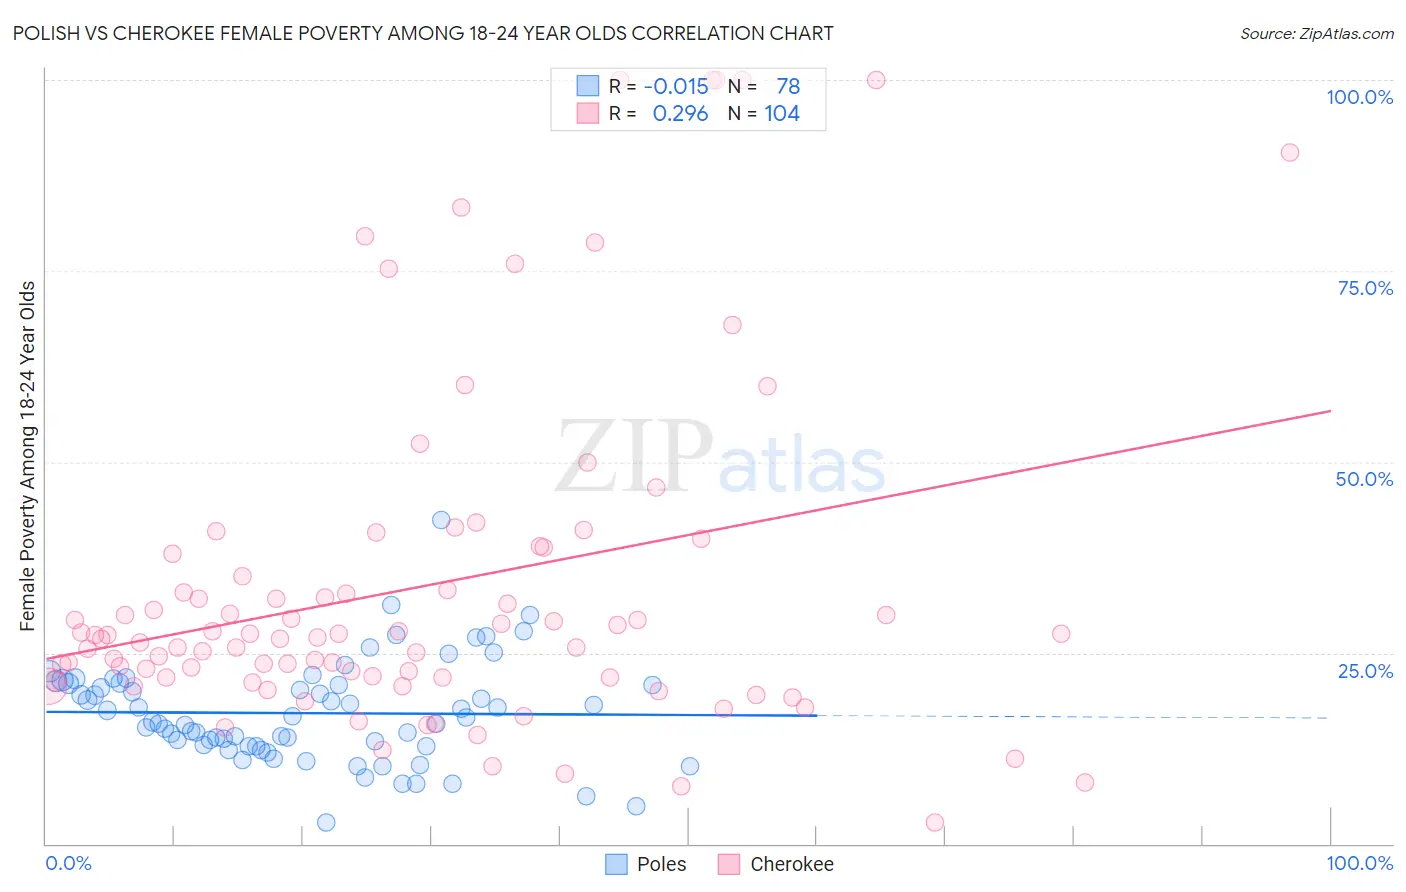 Polish vs Cherokee Female Poverty Among 18-24 Year Olds